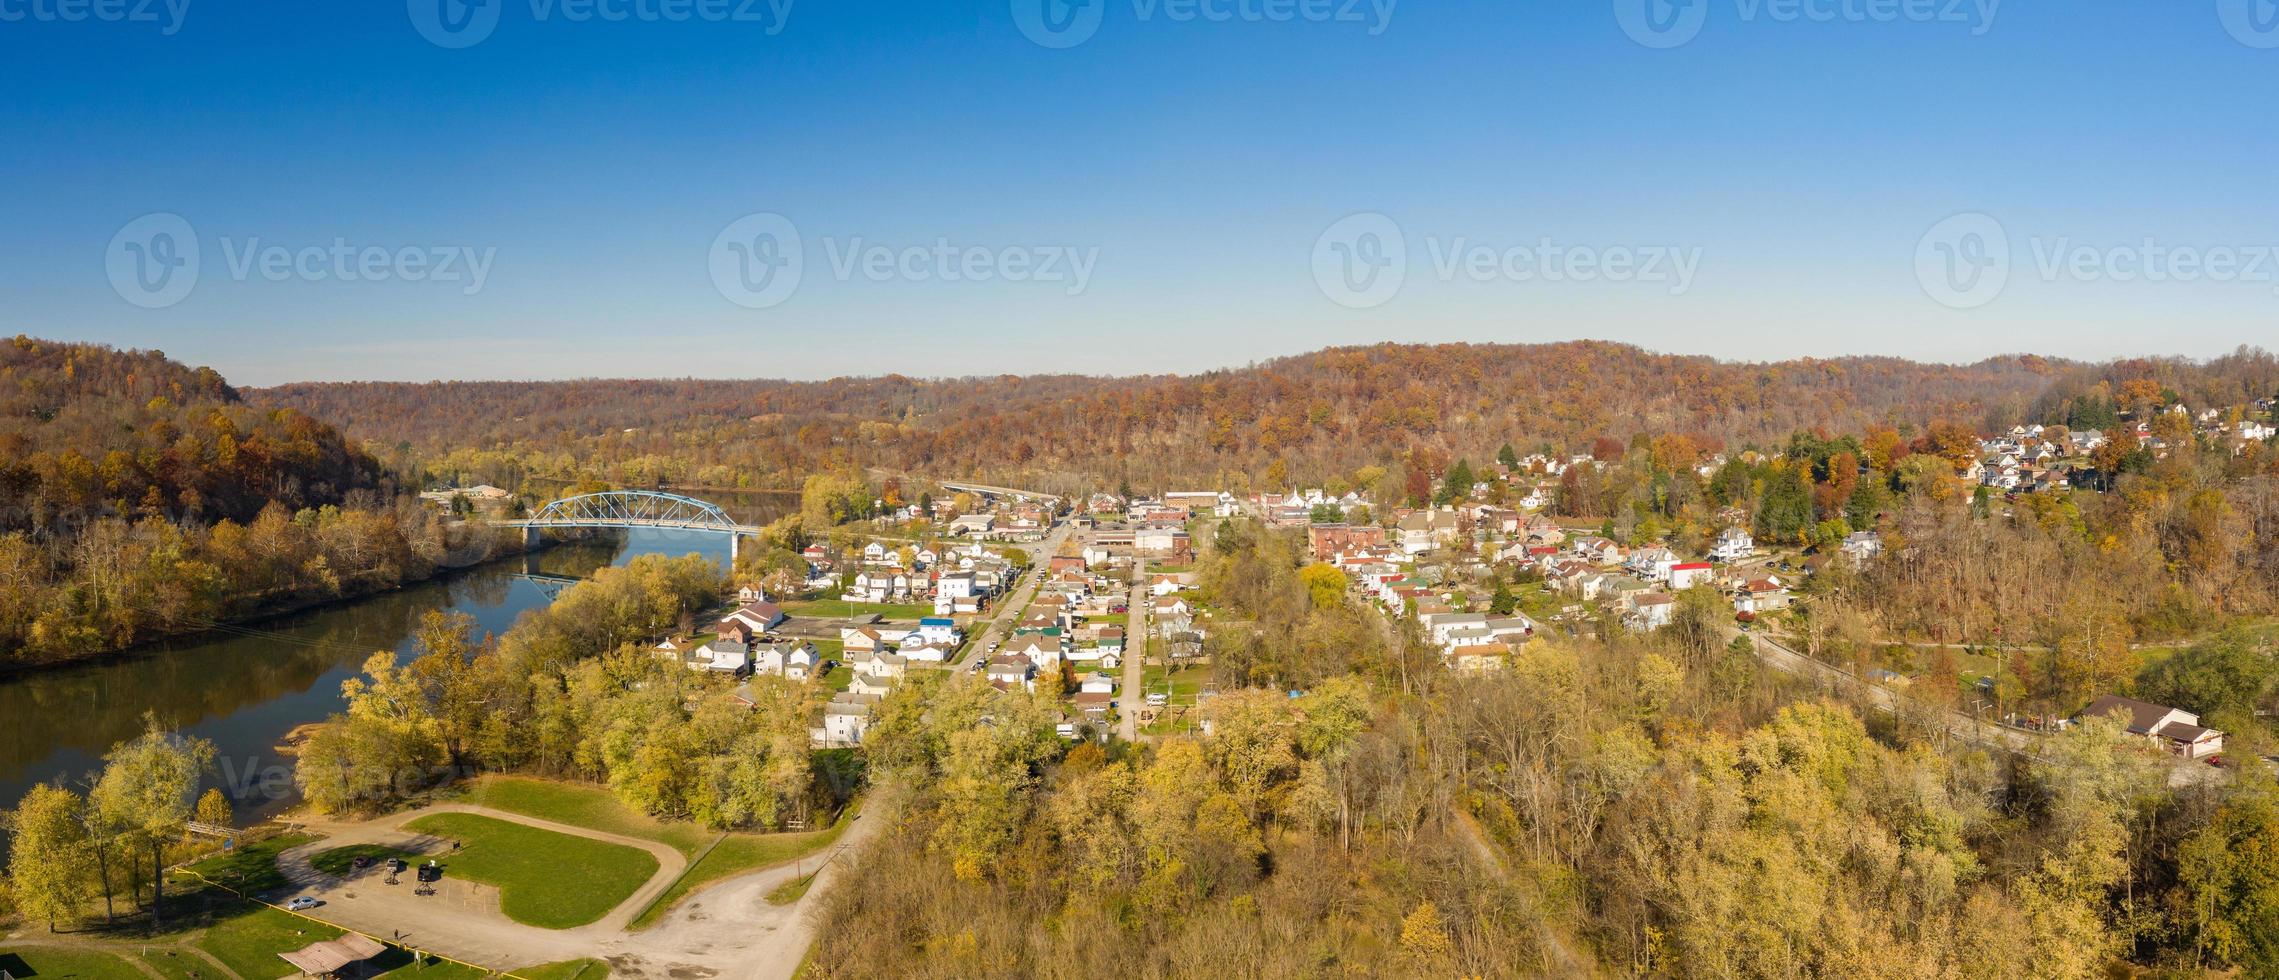 panorama de drone aéreo do centro da cidade de point marion na pensilvânia foto